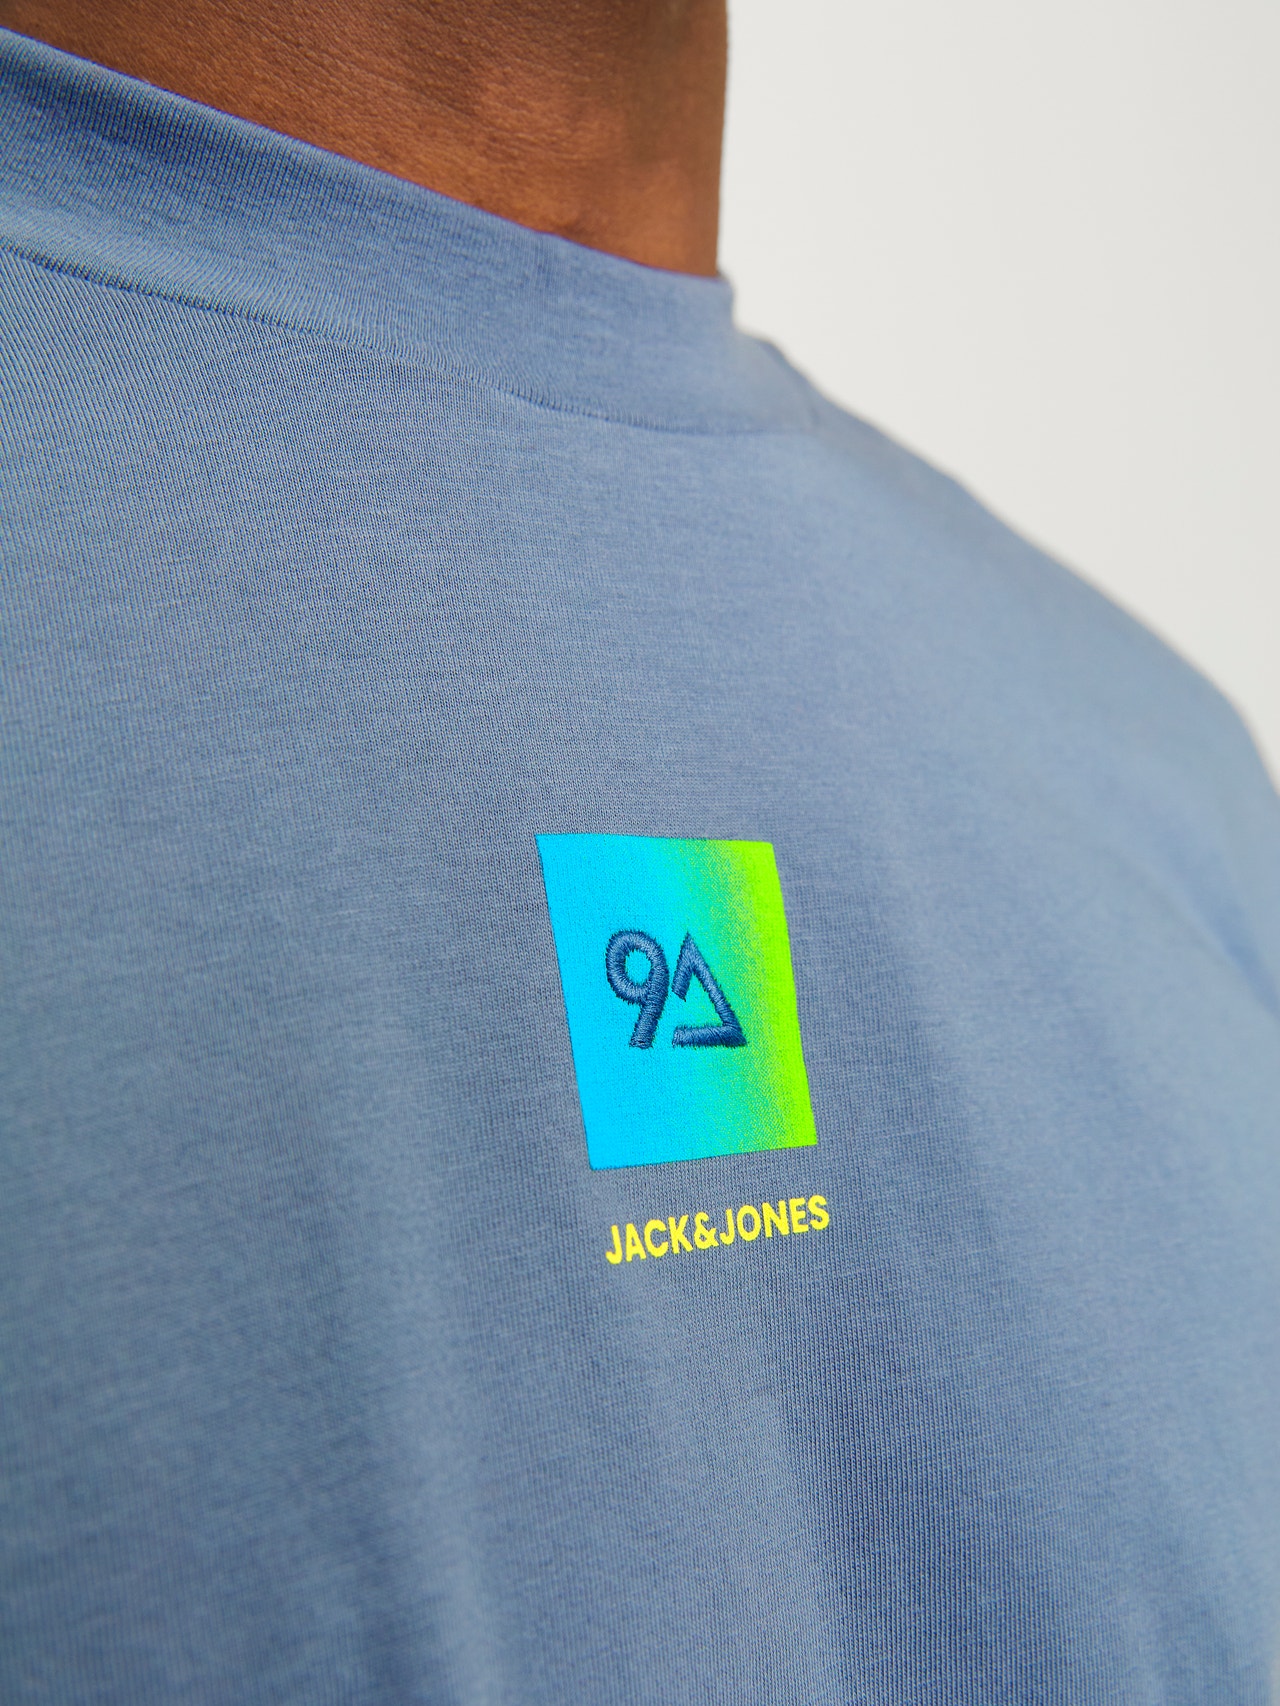 Jack & Jones Printet Crew neck T-shirt -Flint Stone - 12256560